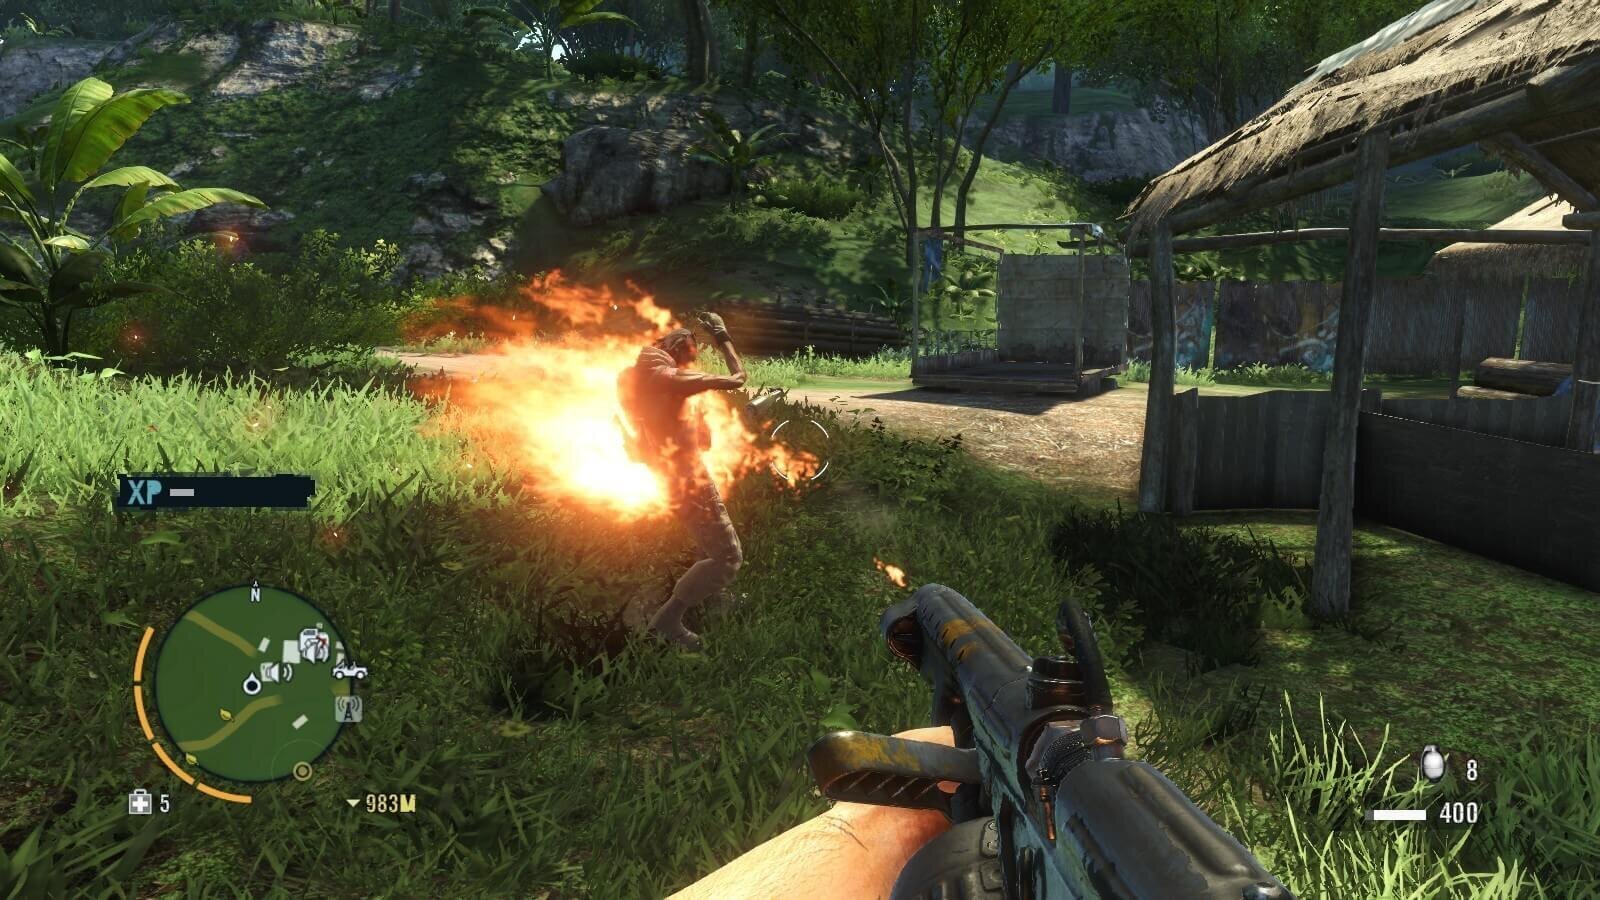 Far Cry 3 Classic Edition PS4 cena un informācija | Datorspēles | 220.lv